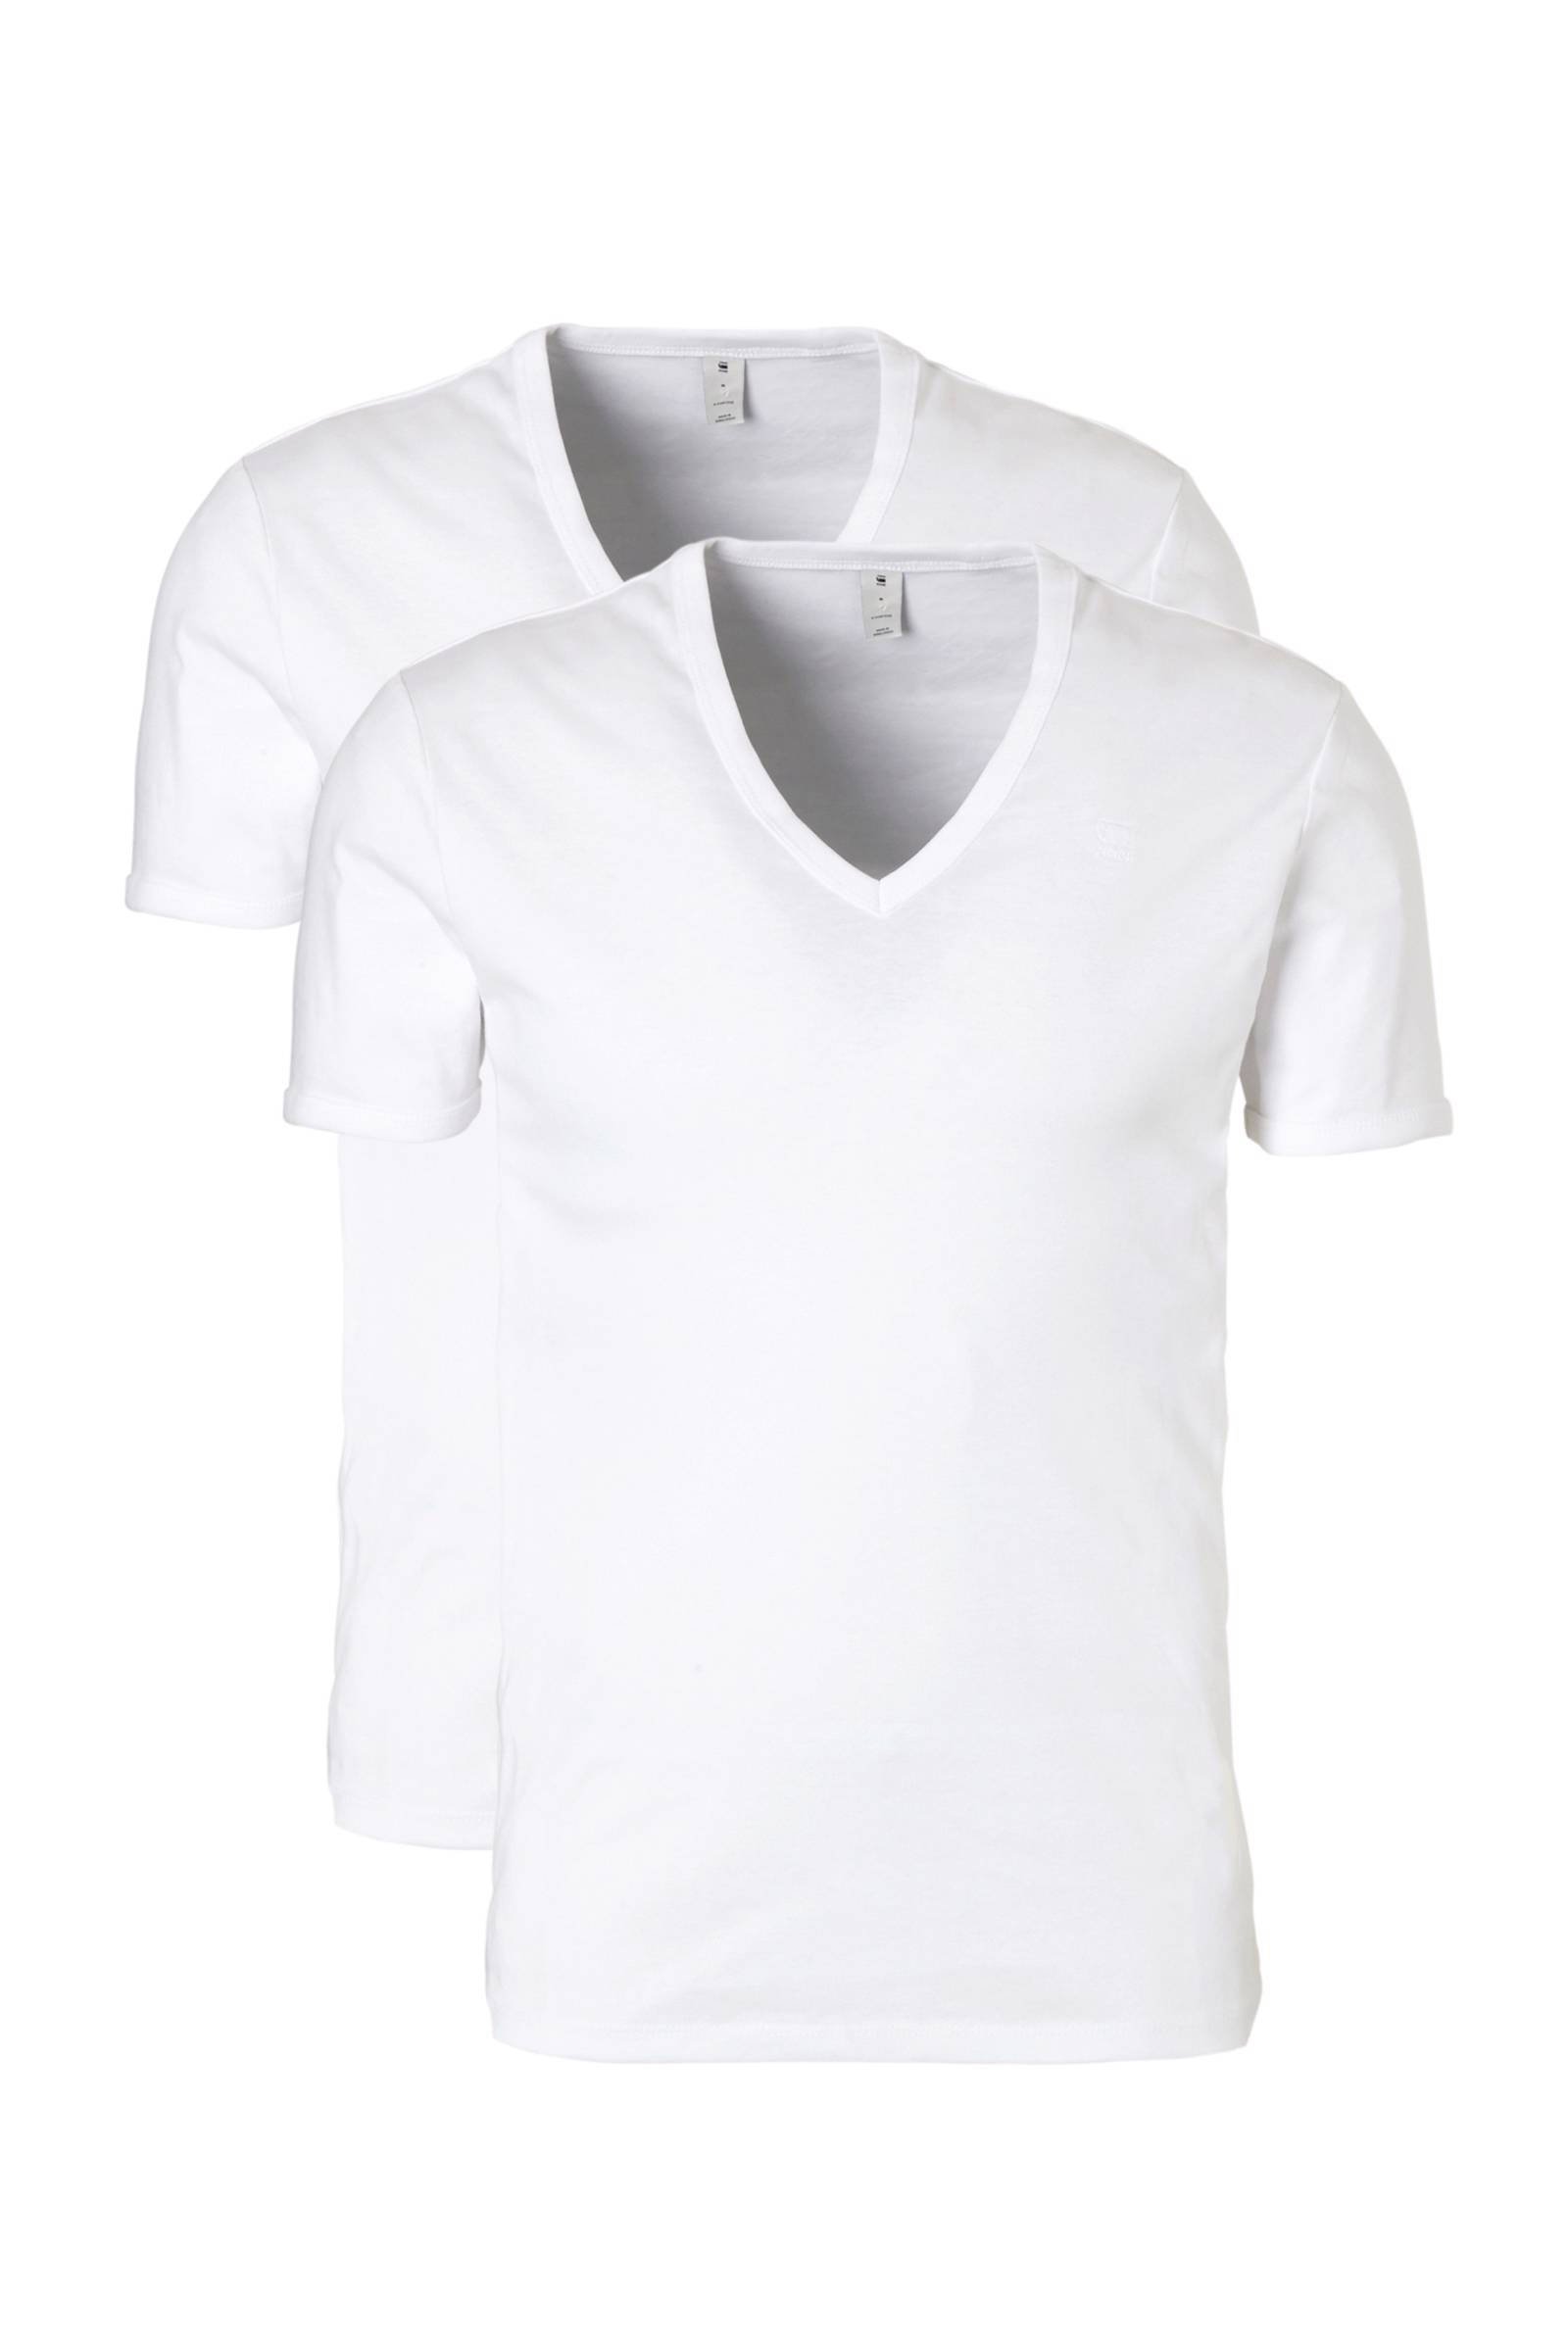 G-Star G Star RAW T shirt Basic artikel in ondoorzichtige, eersteklas katoenkwaliteit(set, Set van 2 ) online kopen